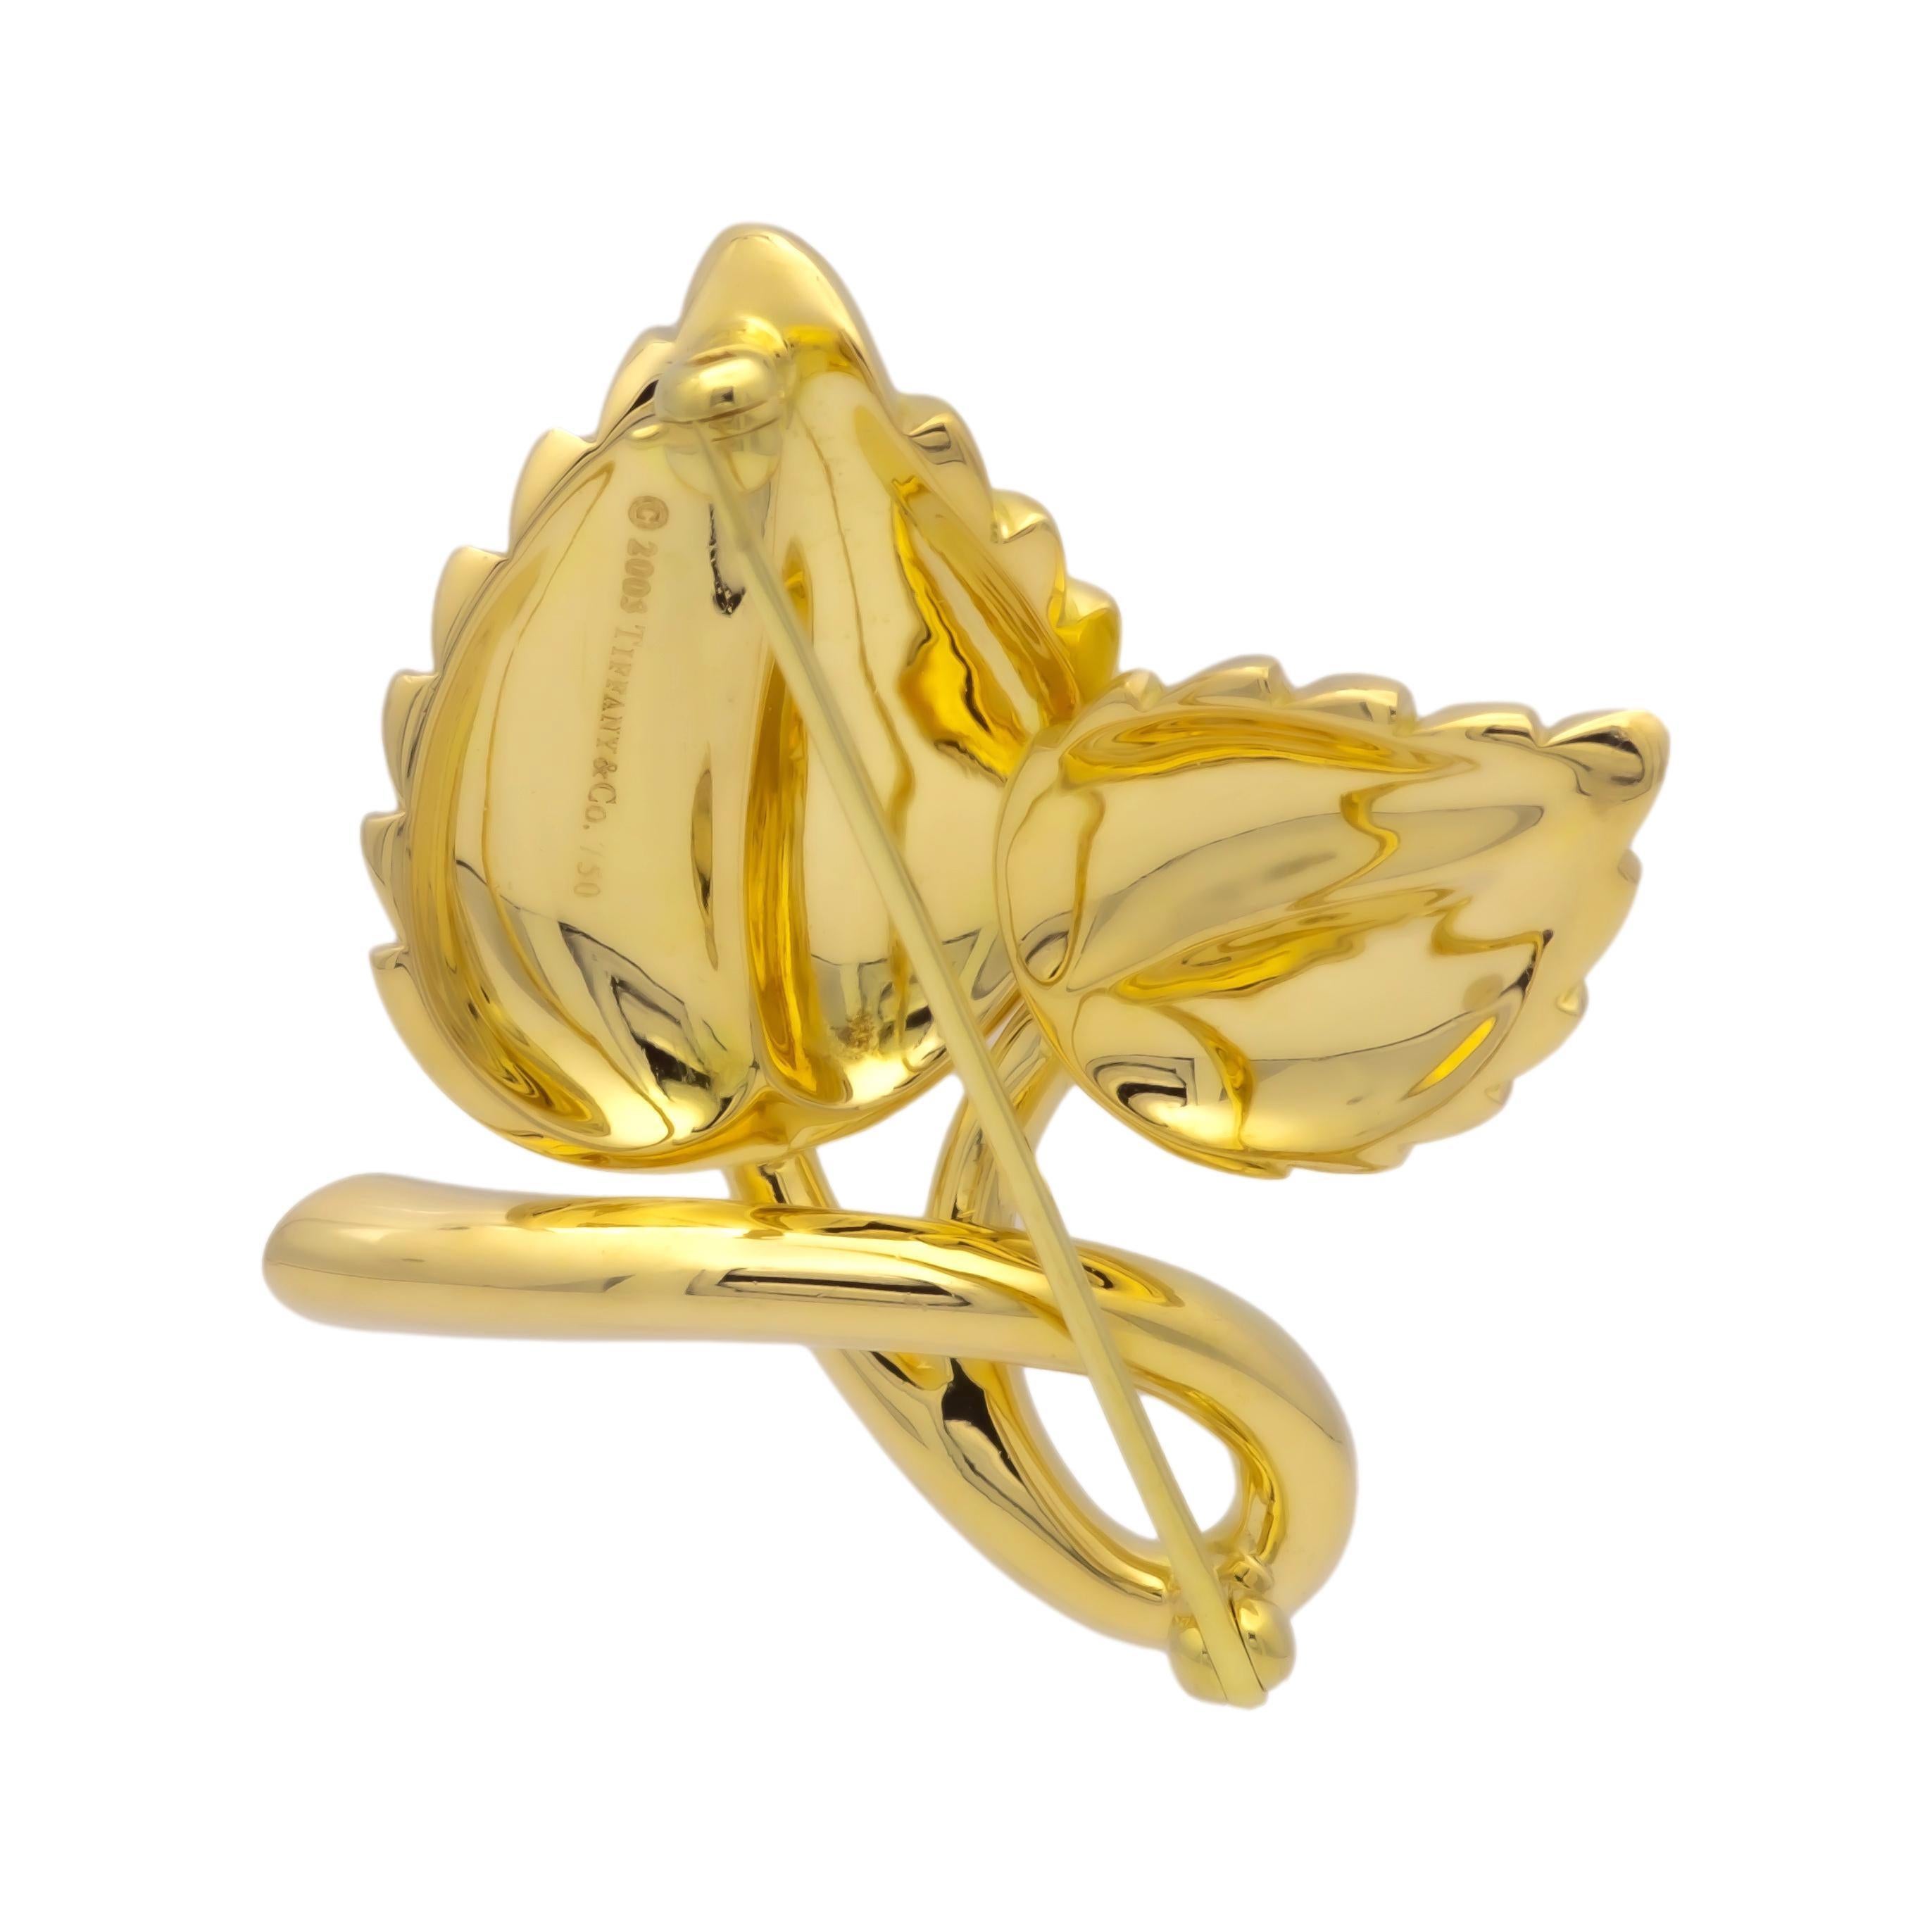 Vintage Tiffany & Co. Doppelblatt-Motiv Pin fein in Handarbeit in 18 Karat Gelbgold mit einem runden Brillantschliff Diamant mit einem Gewicht von 0,08 Karat etwa mit schönen funkelnden. Diese Brosche hat eine satinierte Oberfläche auf hochpoliertem